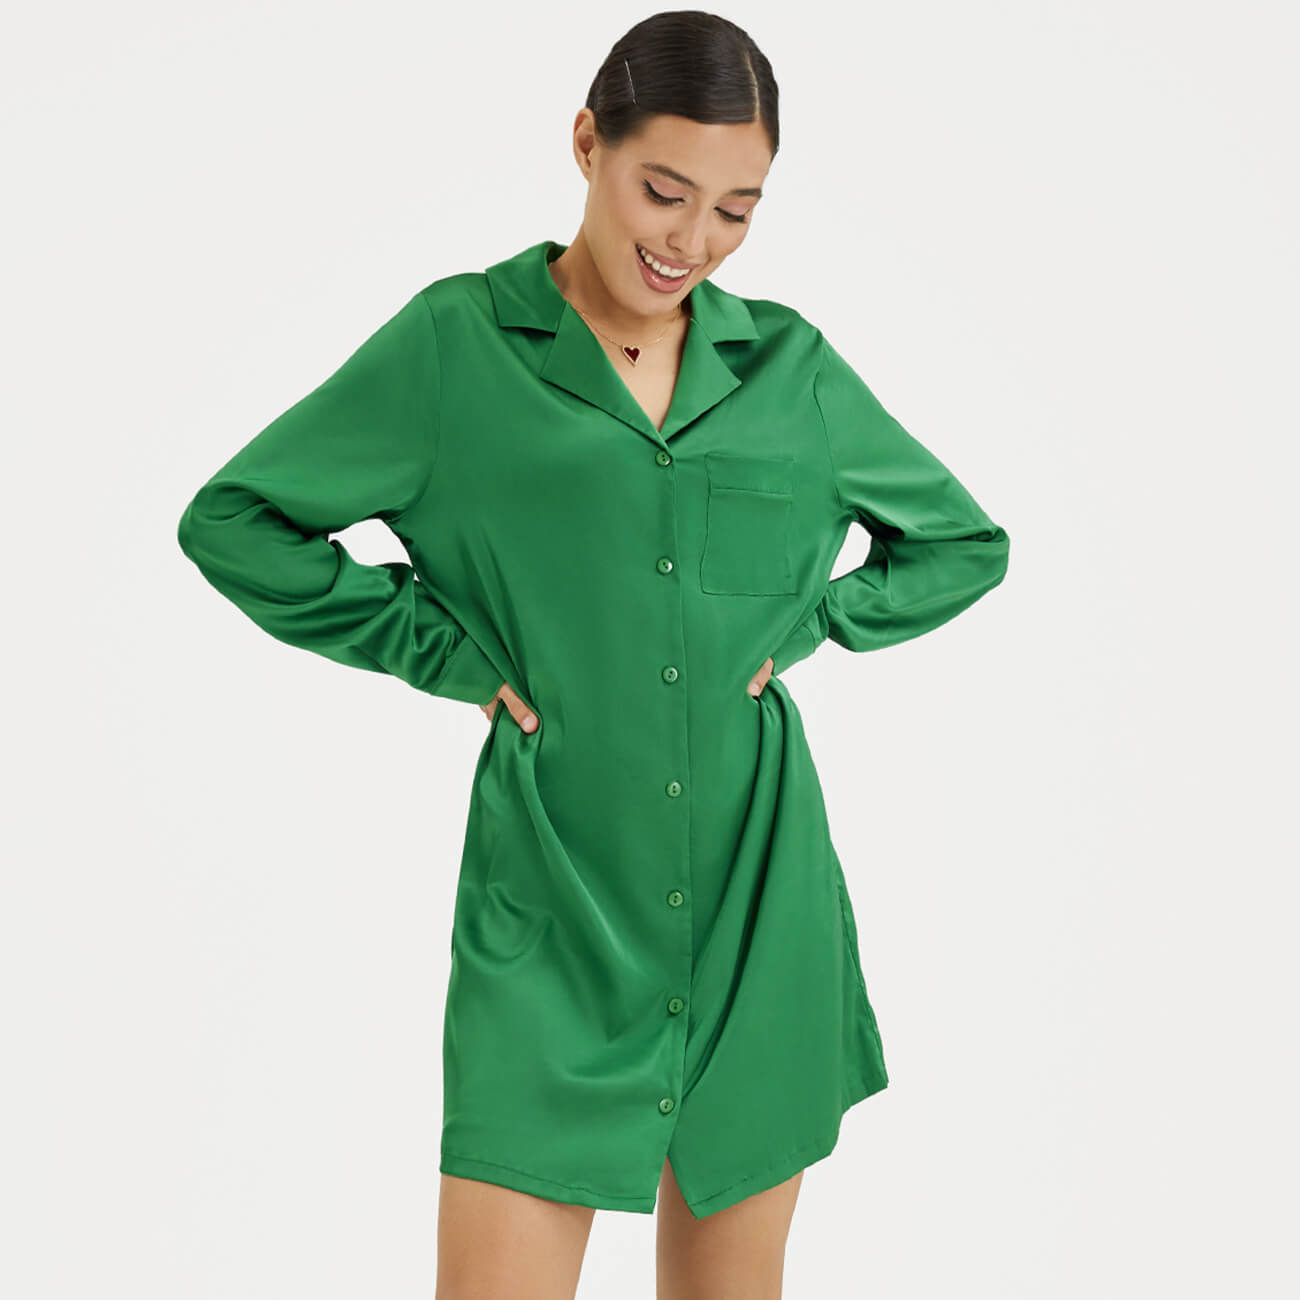 Рубашка женская, р. XL, удлиненная, с длинным рукавом, полиэстер/эластан, зеленая, Madeline рубашка женская р s с длинным рукавом полиэстер хаки bella